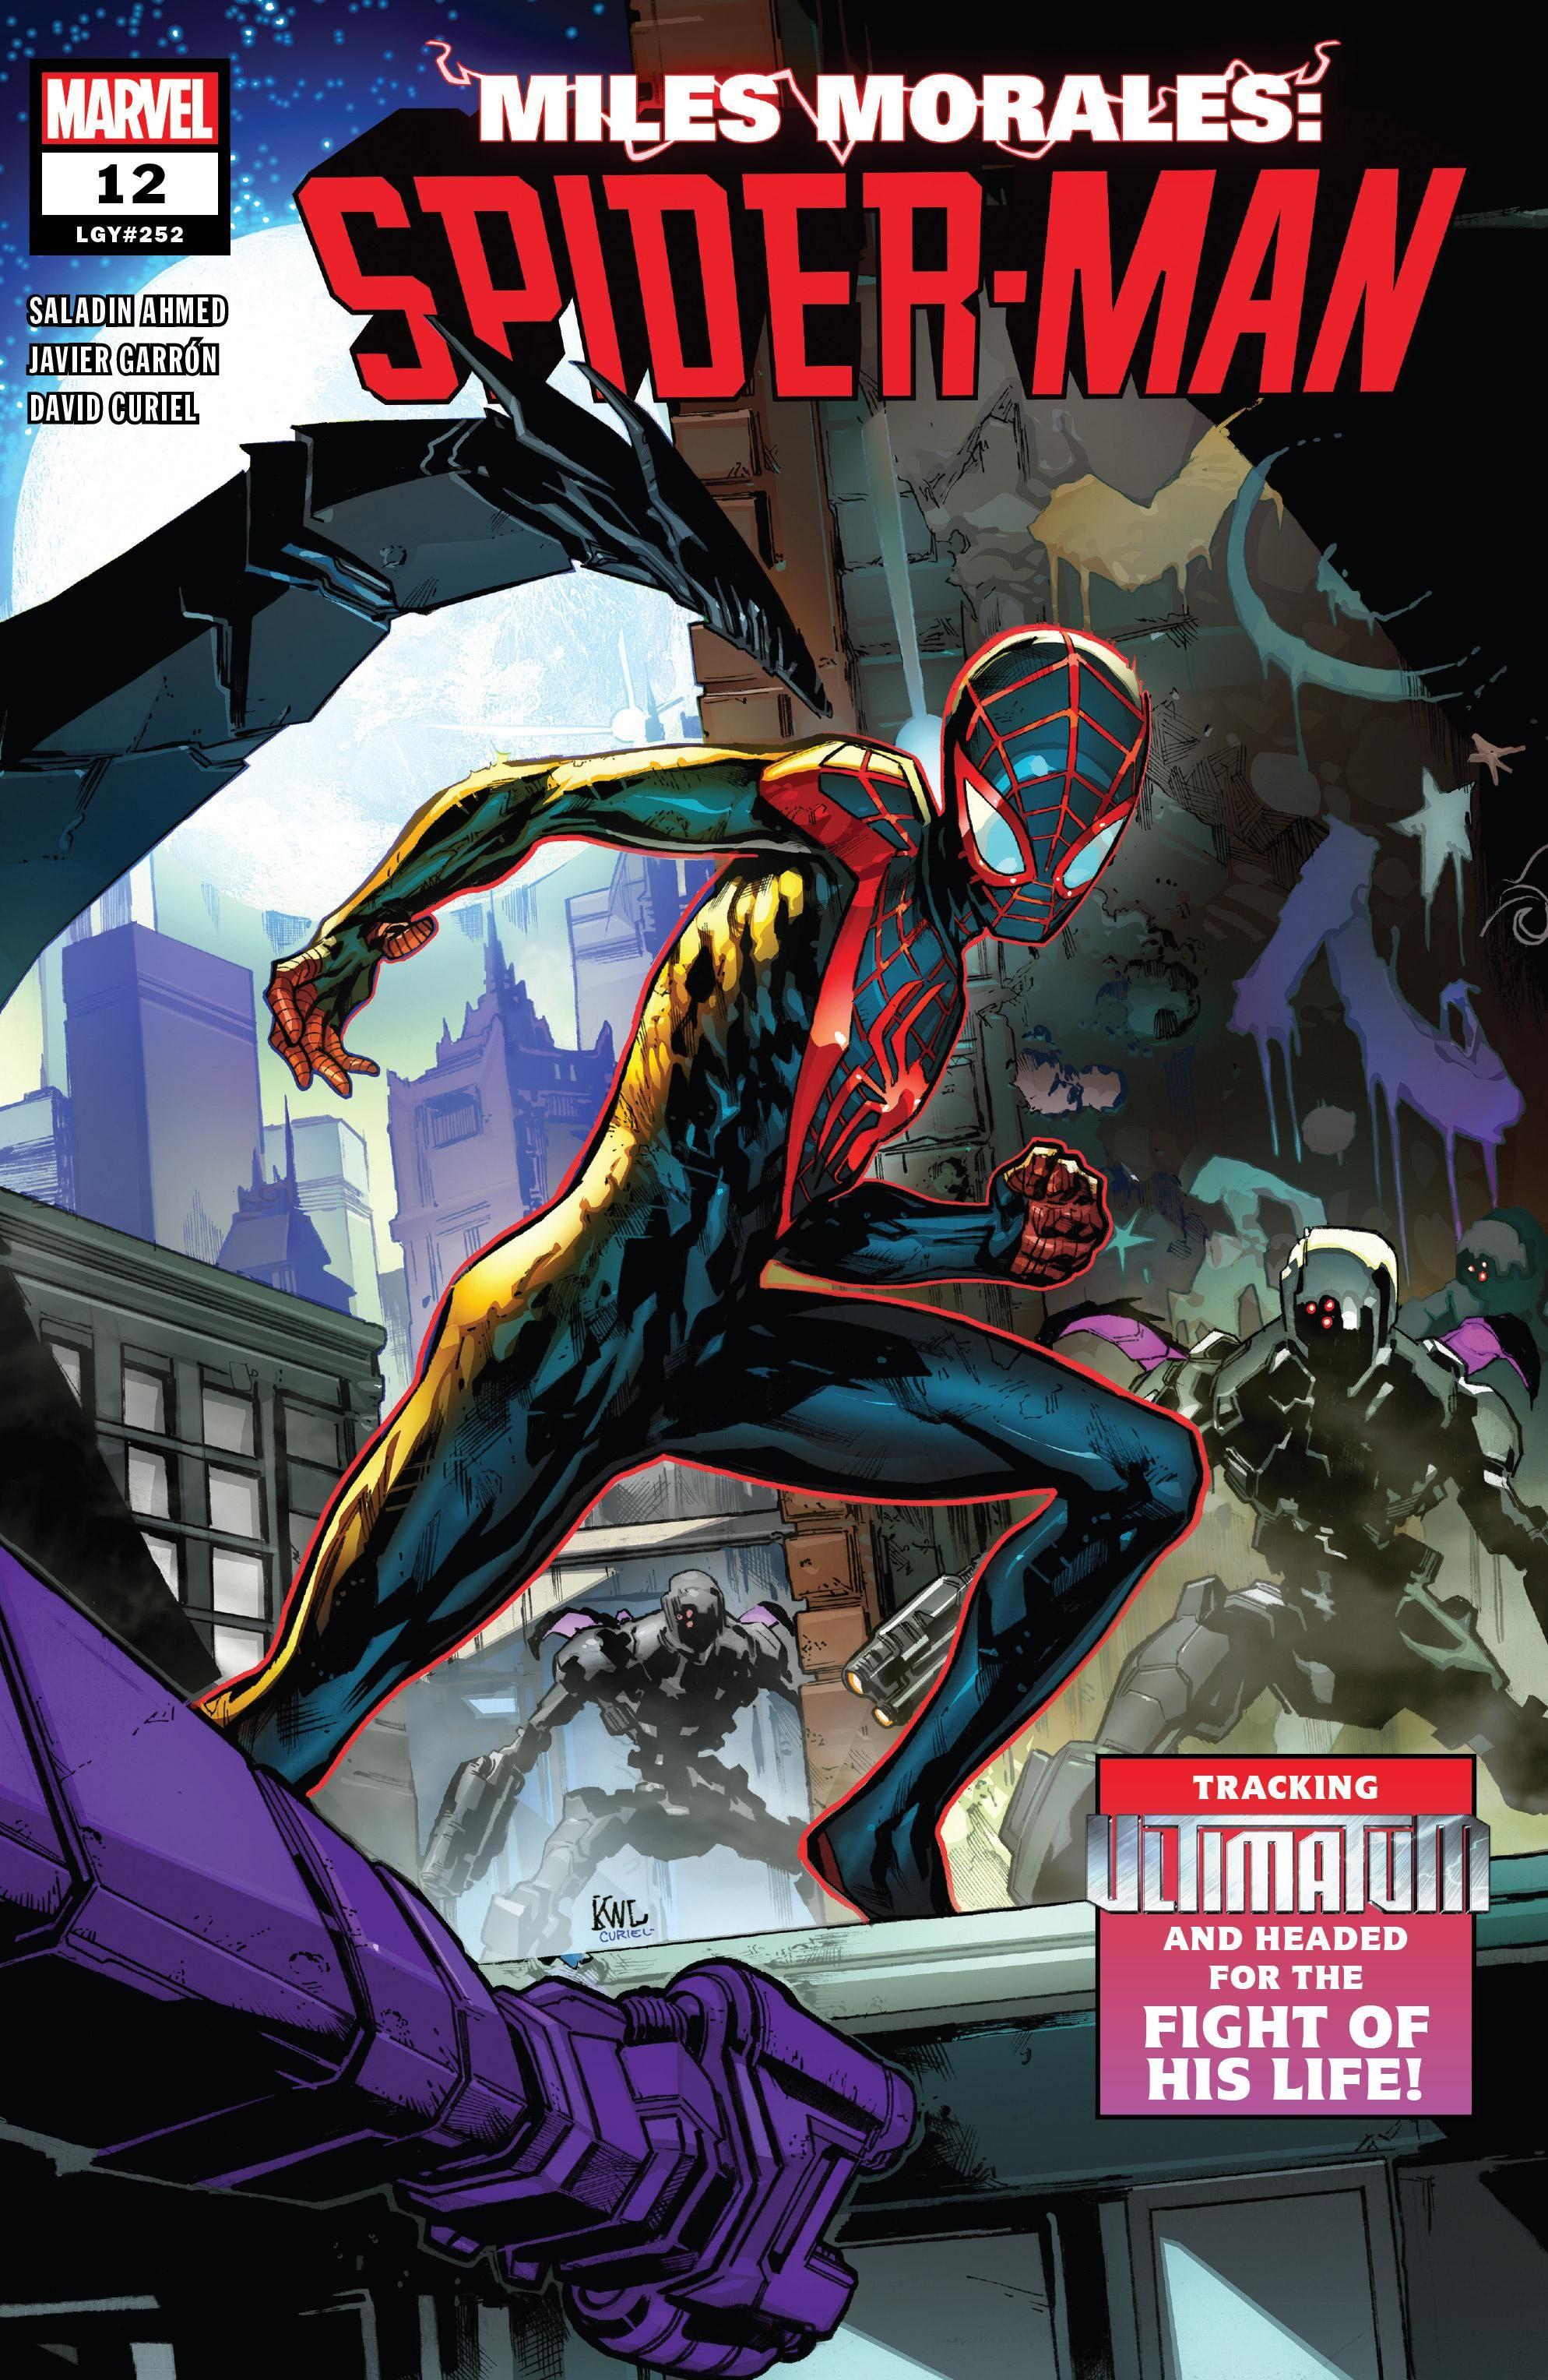 Miles Morales: Spider-Man Vol. 1 #12